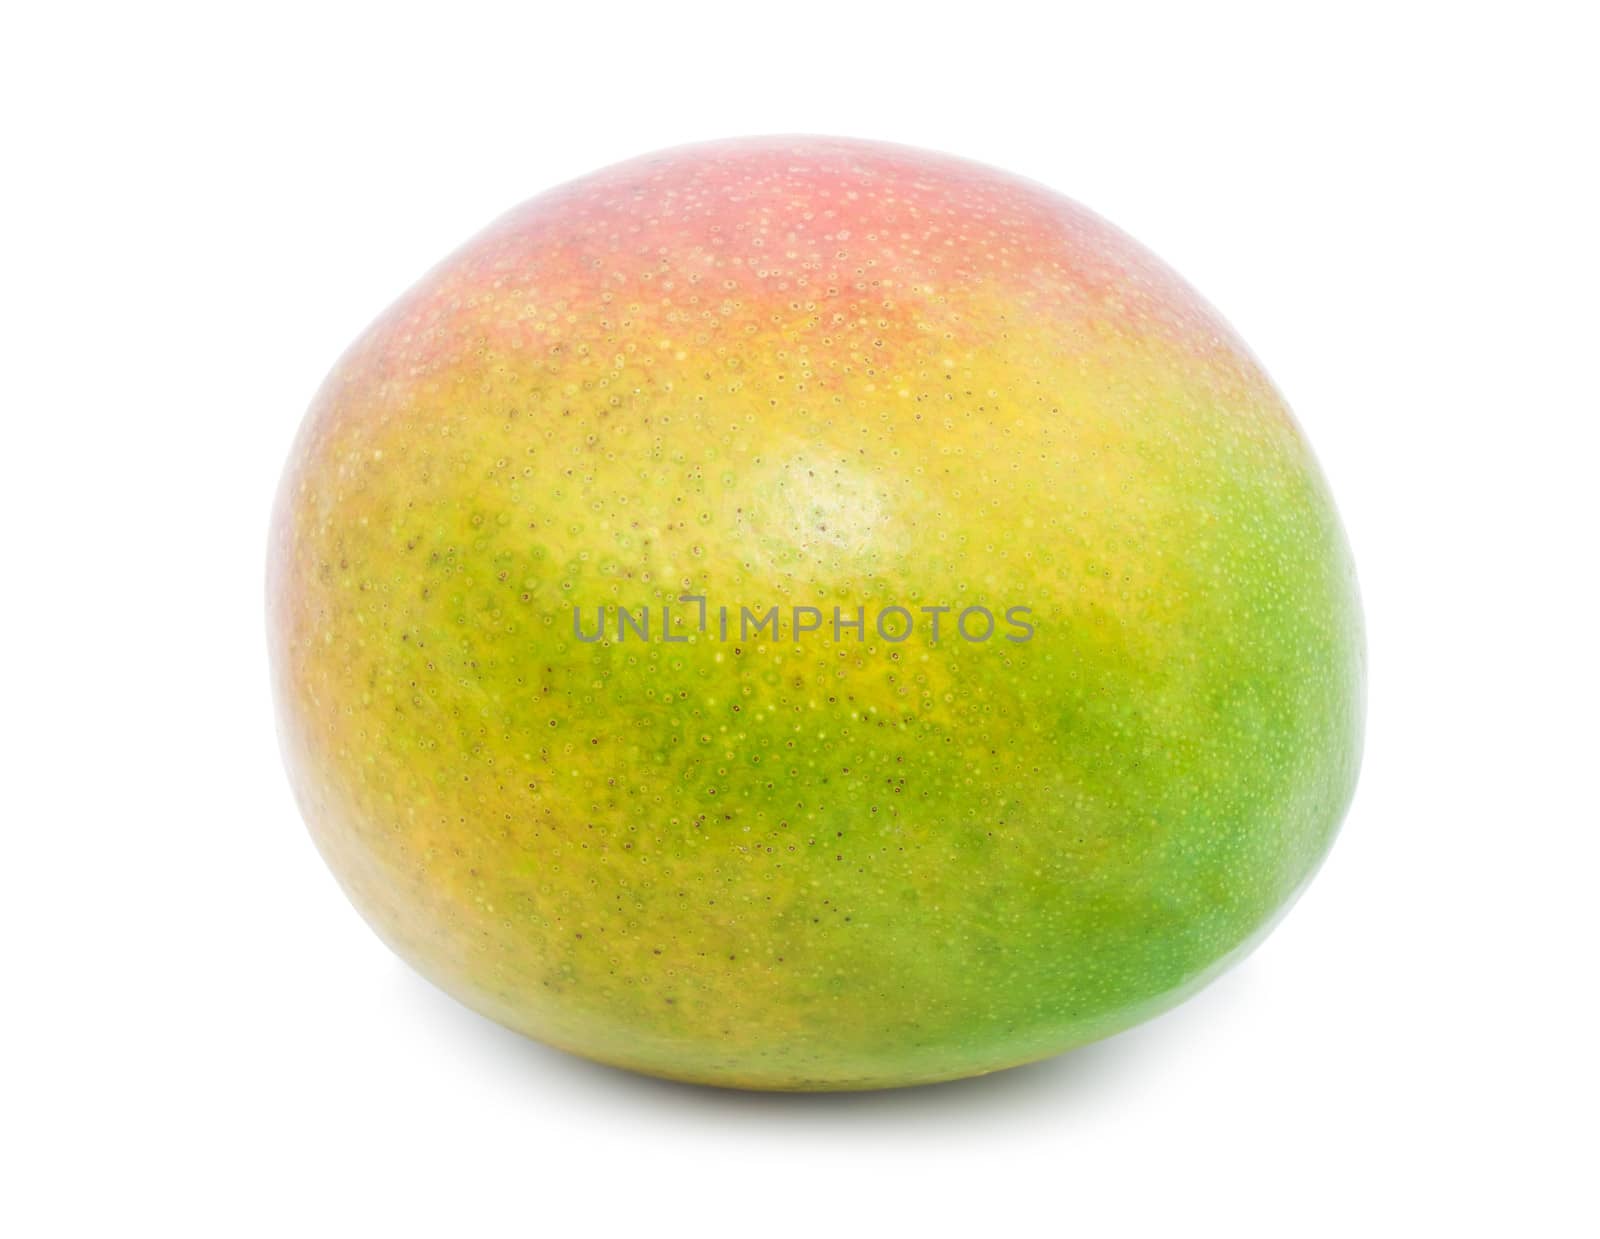 Fresh juicy Mango fruit isolated on white background